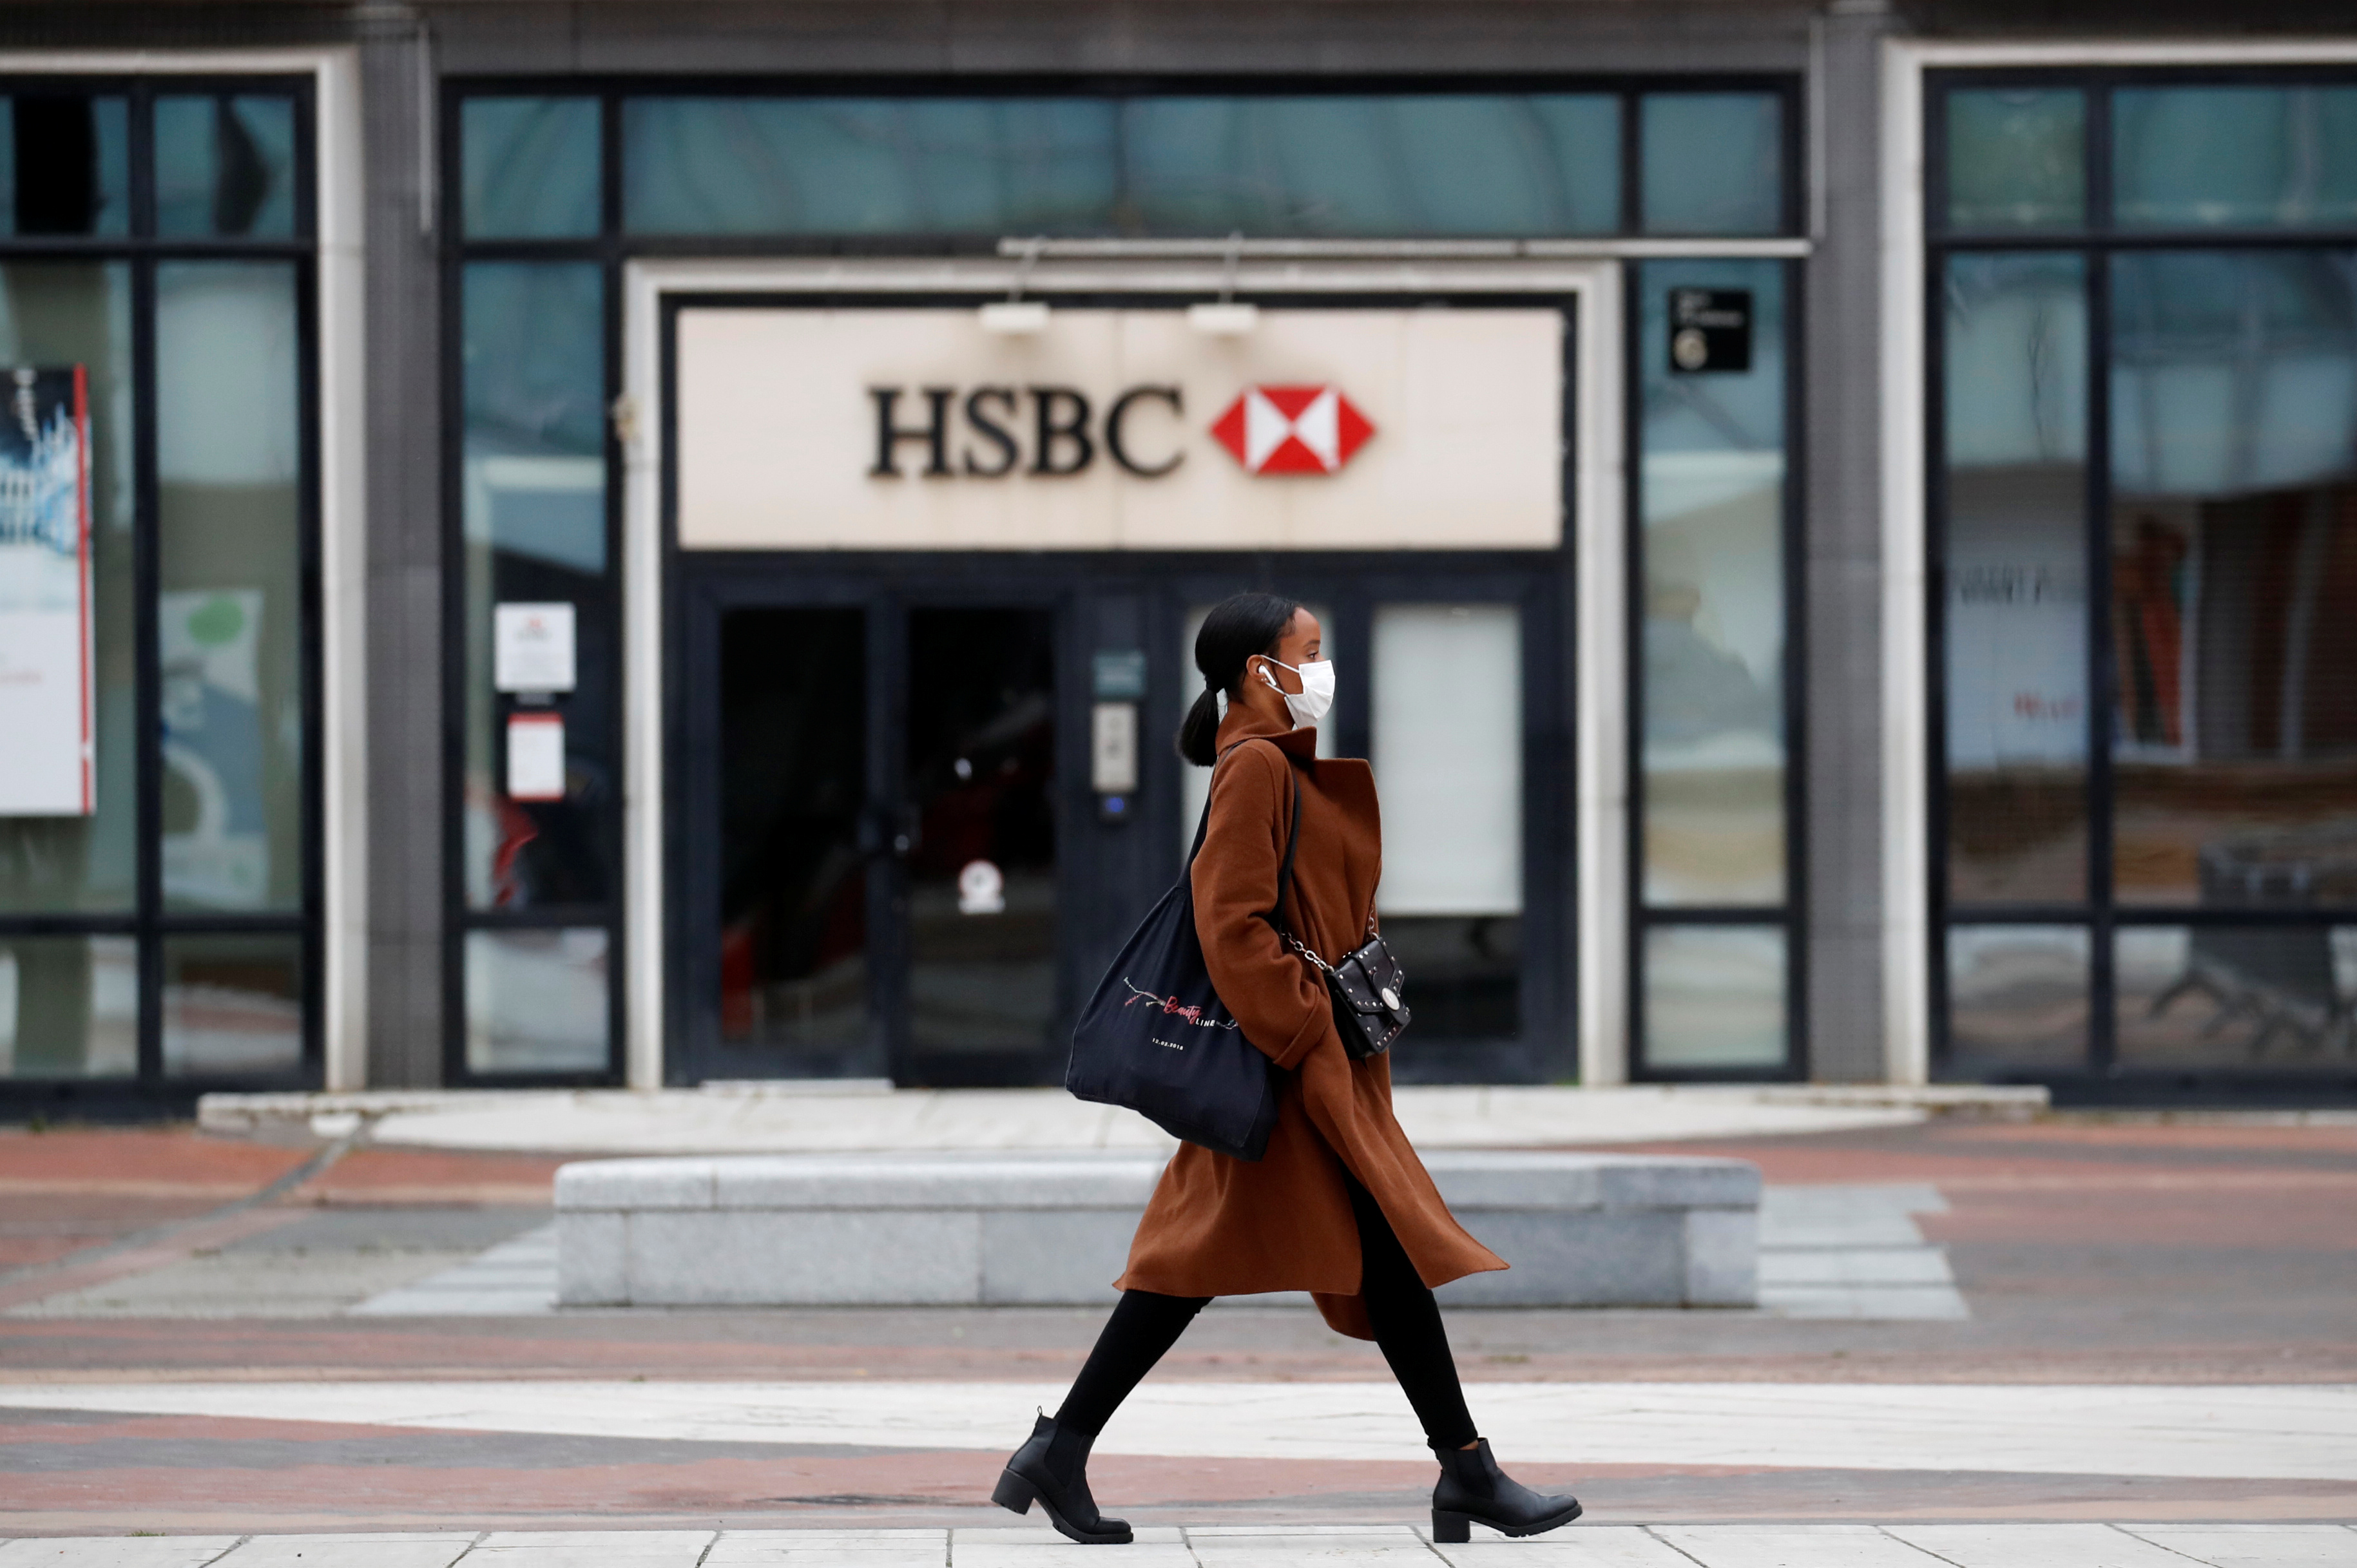 Des actionnaires pressent HSBC d'agir plus vite sur le climat